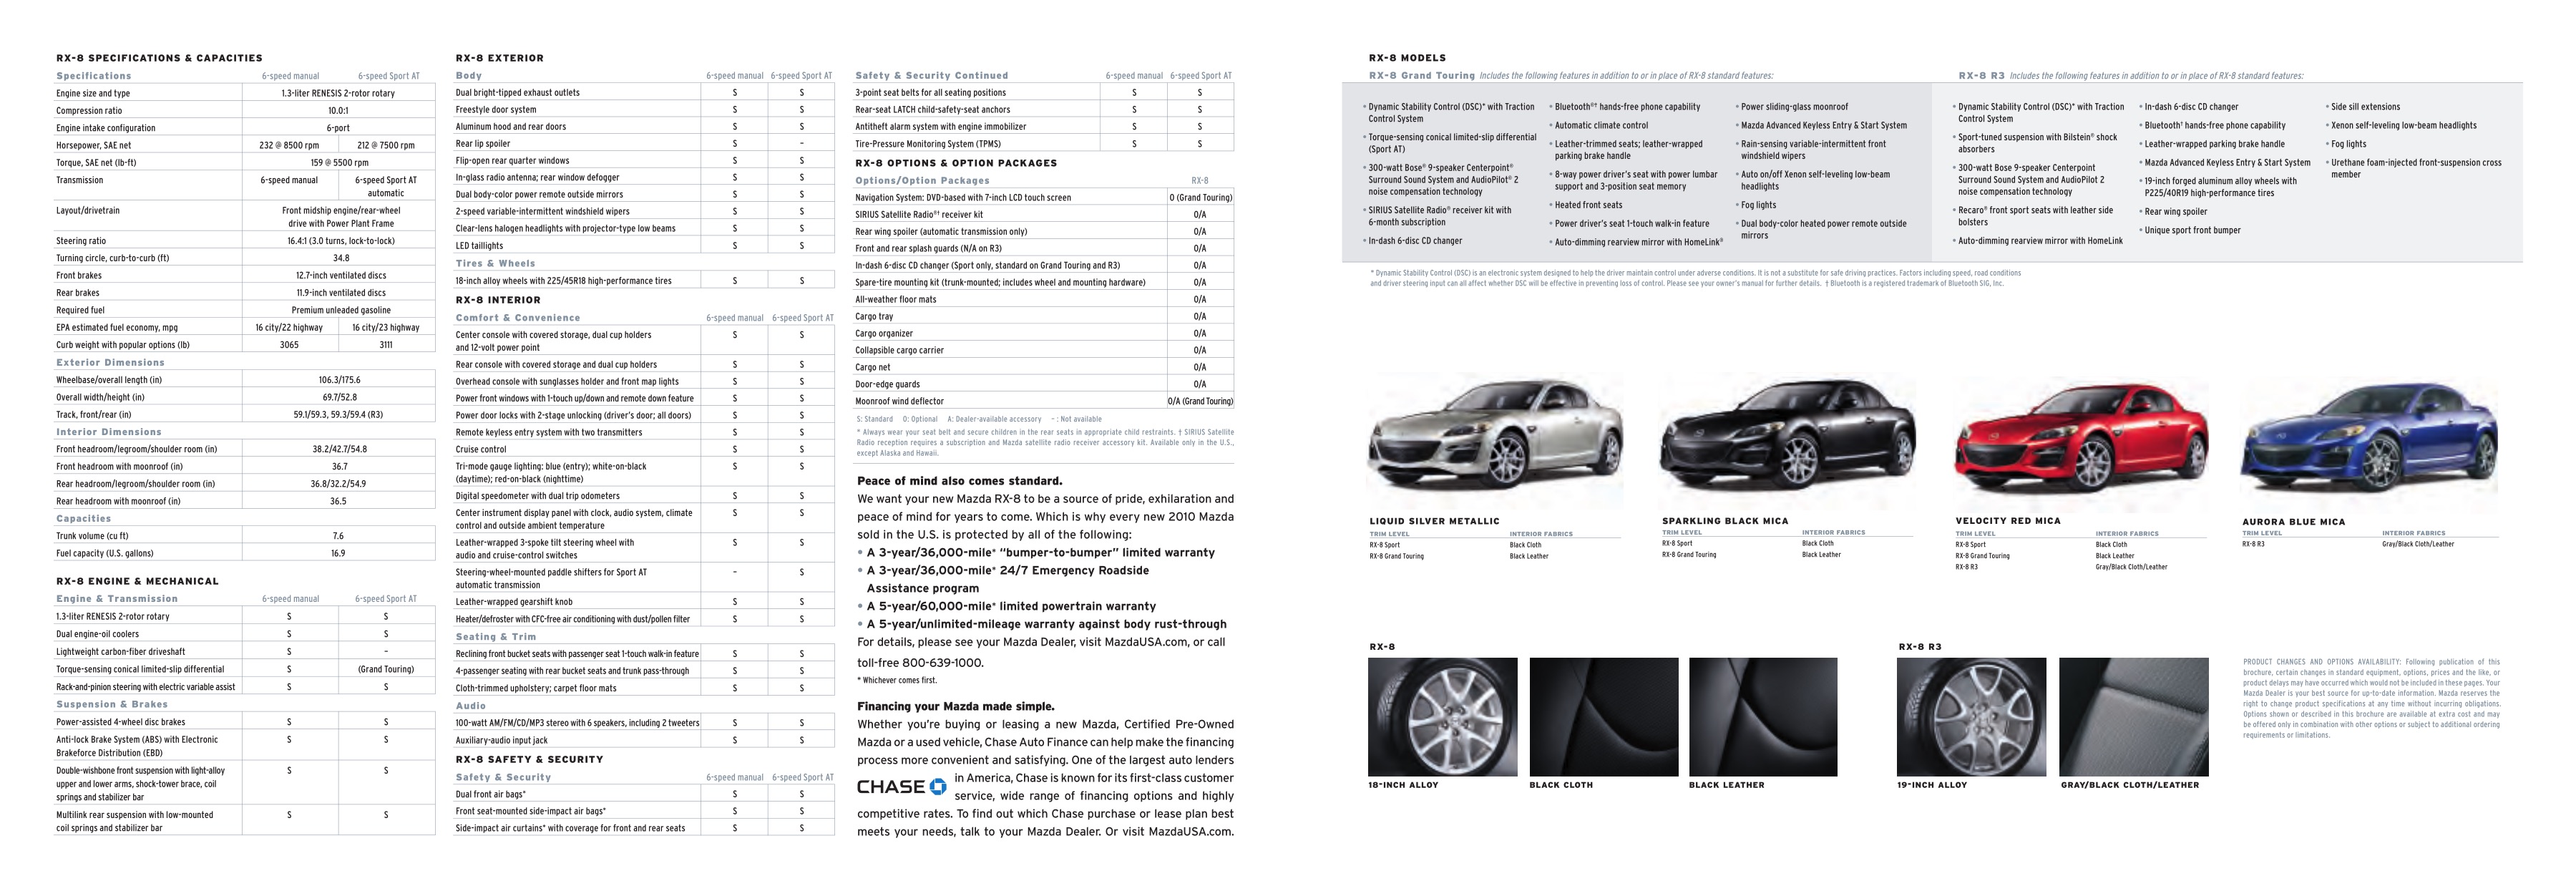 2010 Mazda RX-8 Brochure Page 7